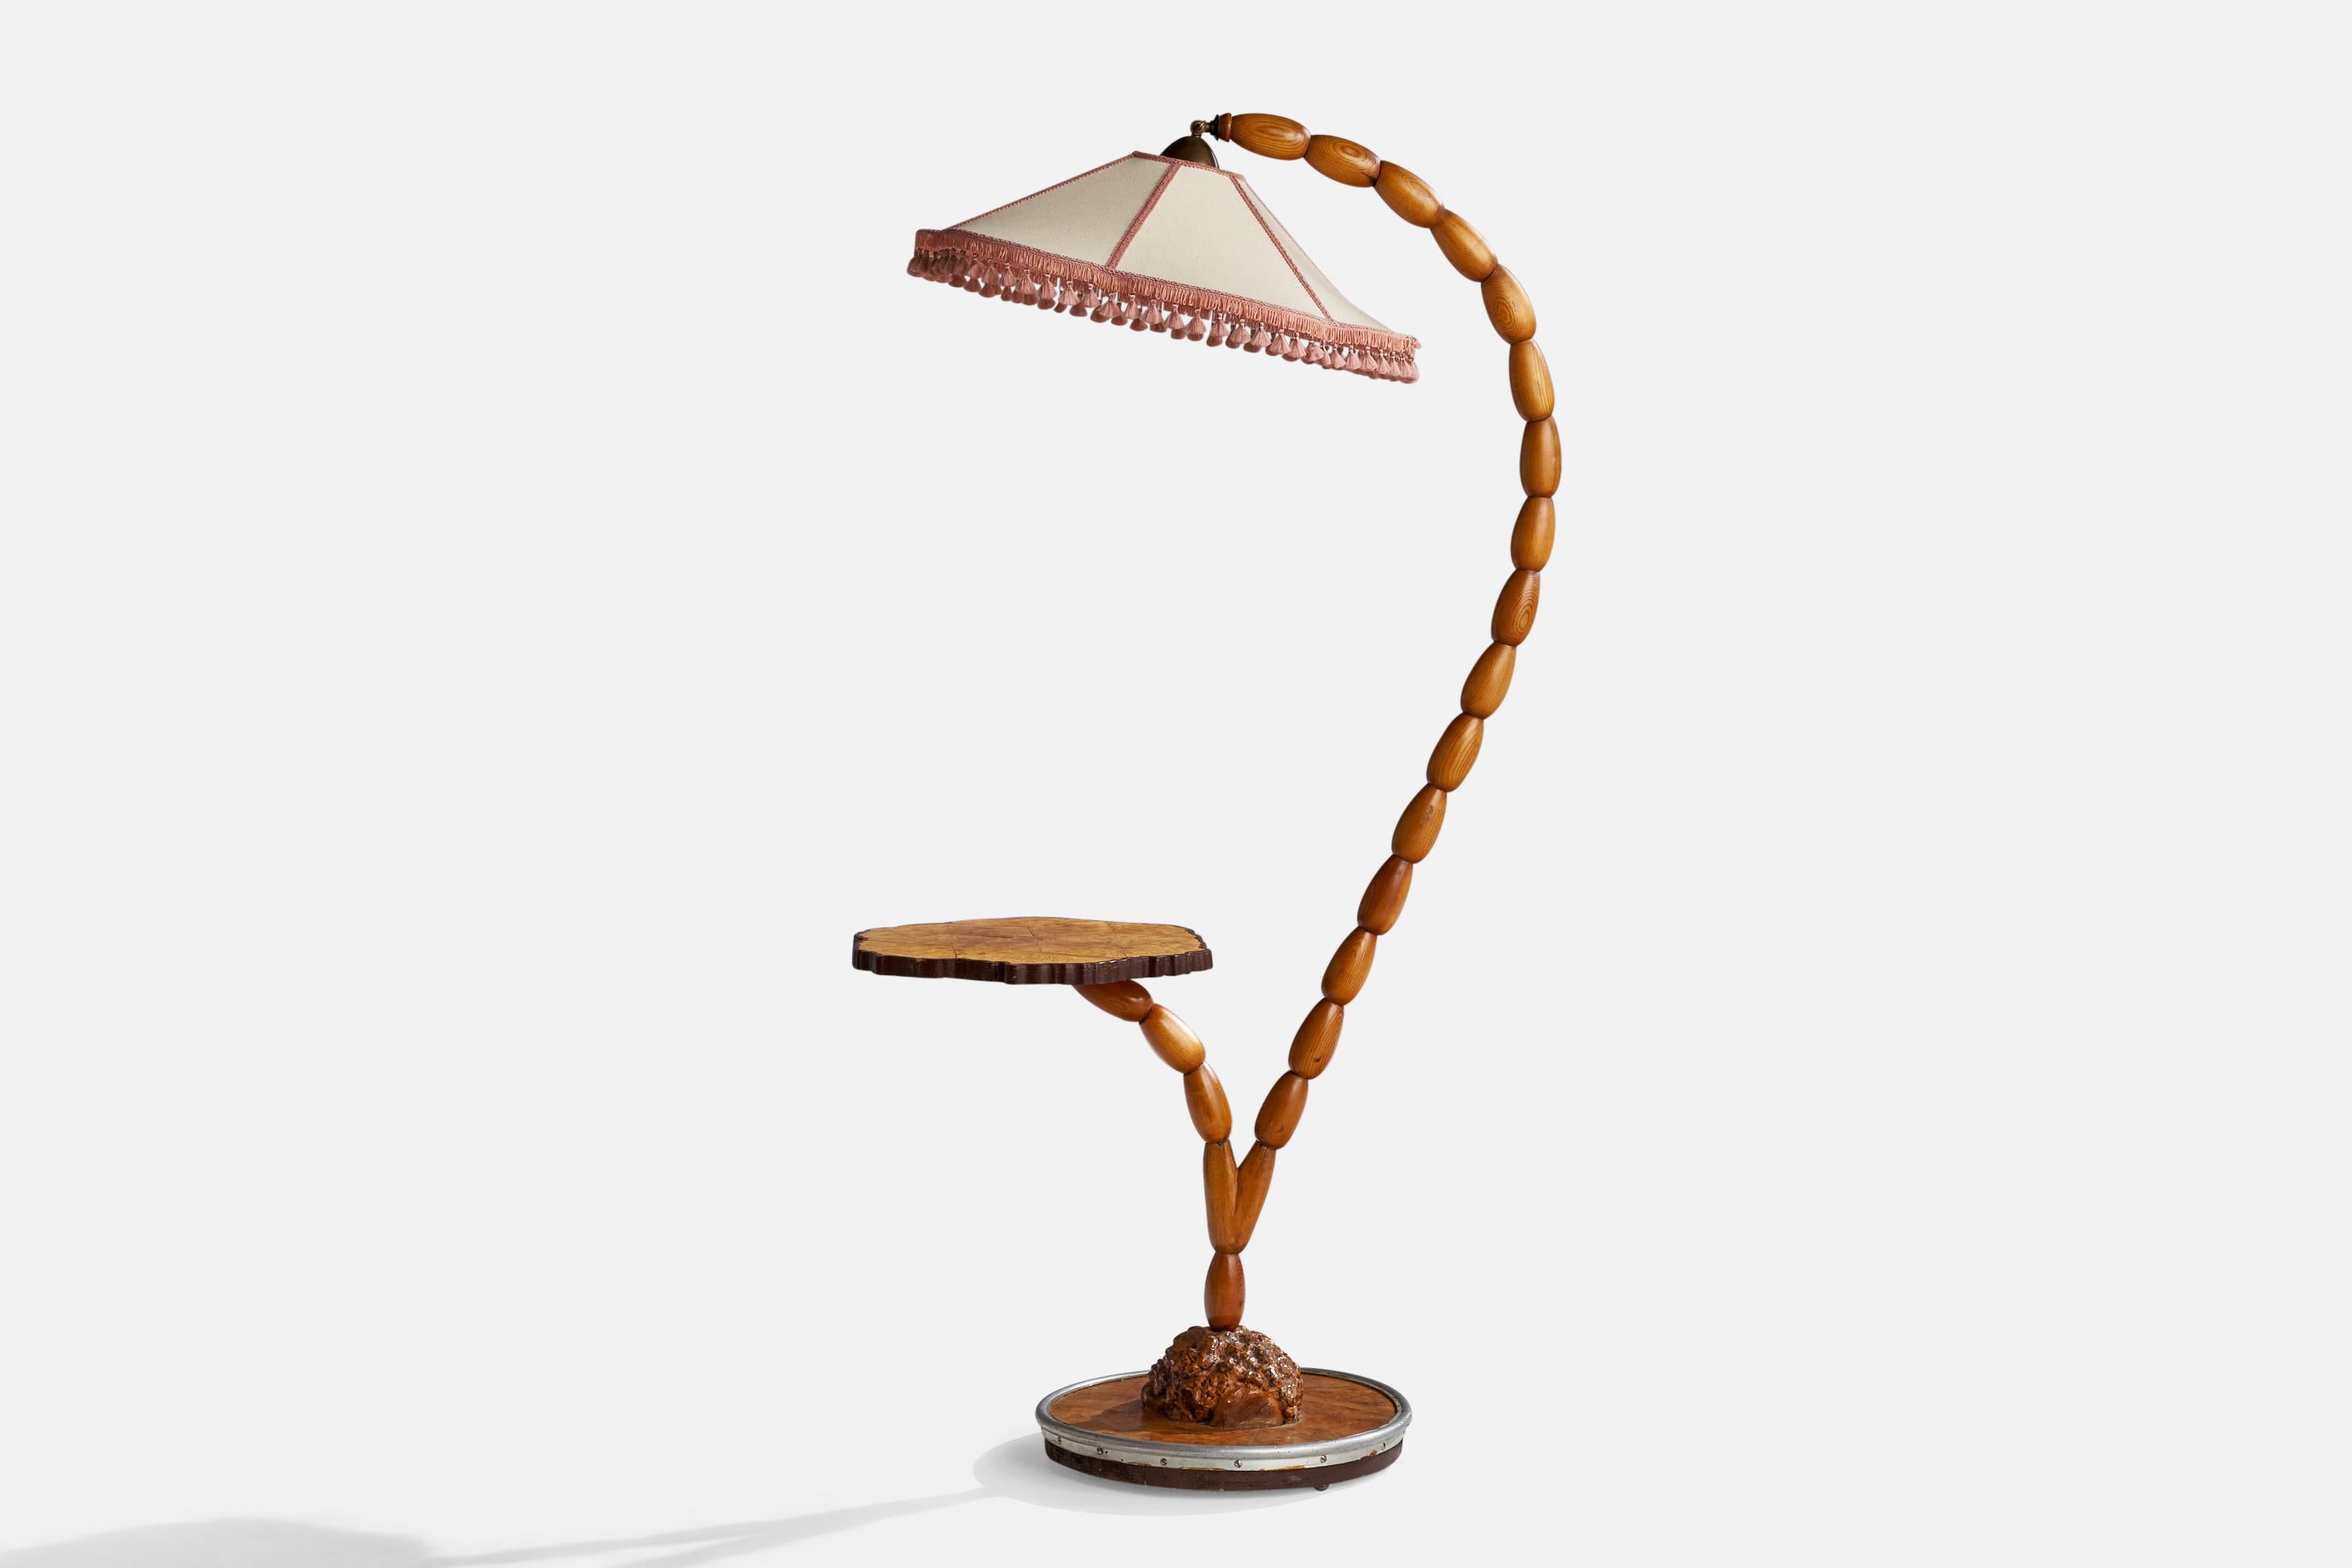 Lampadaire avec table en pin, laiton, métal, bouleau et tissu, conçu et produit en Suède, vers les années 1960.

Dimensions globales (pouces) : 63